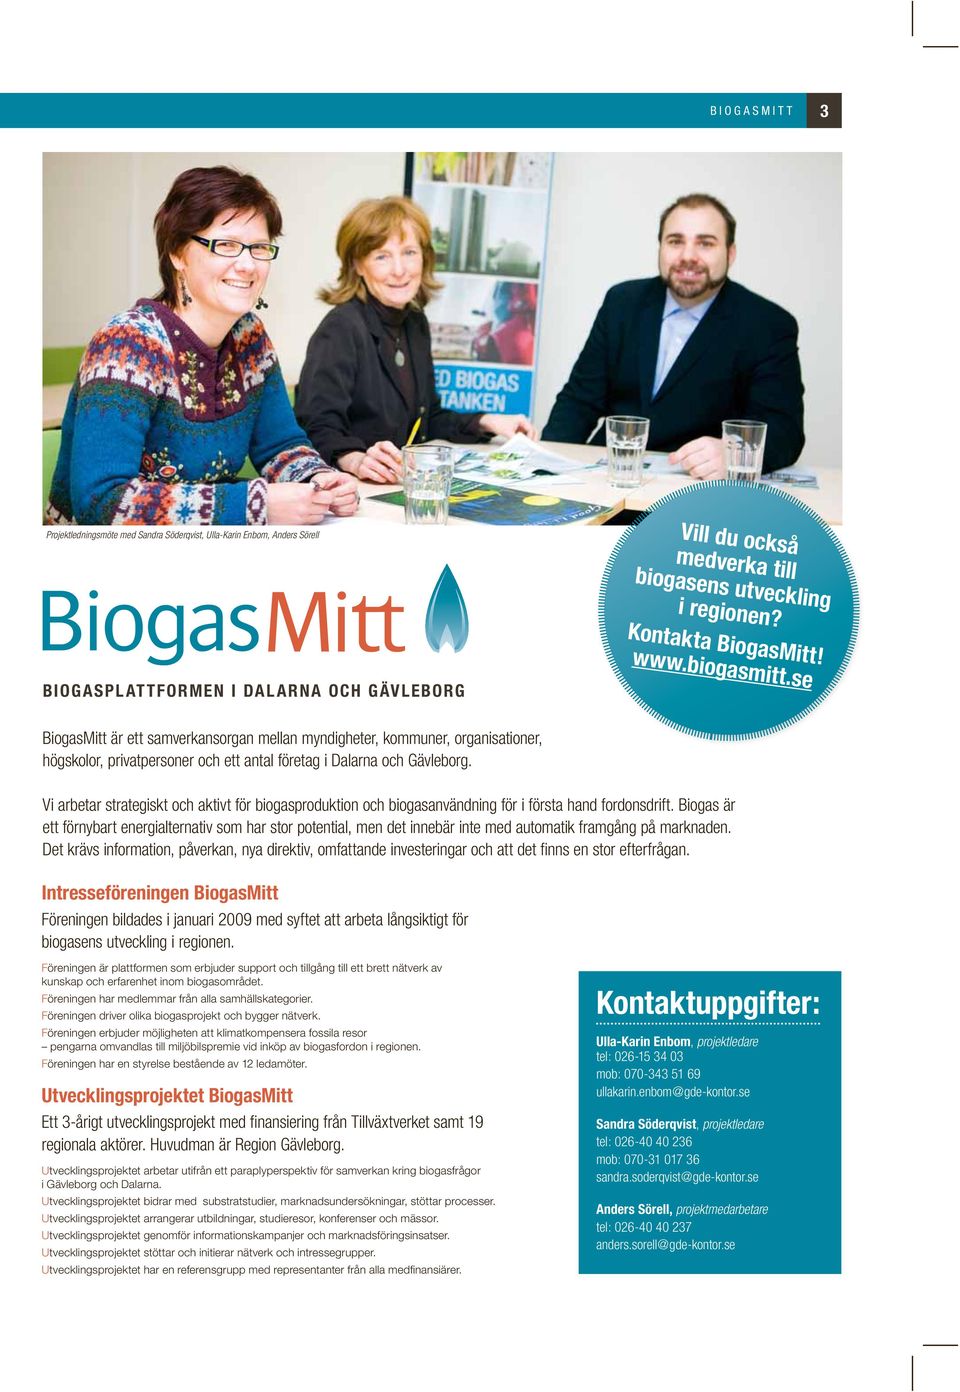 Vi arbetar strategiskt och aktivt för biogasproduktion och biogasanvändning för i första hand fordonsdrift.